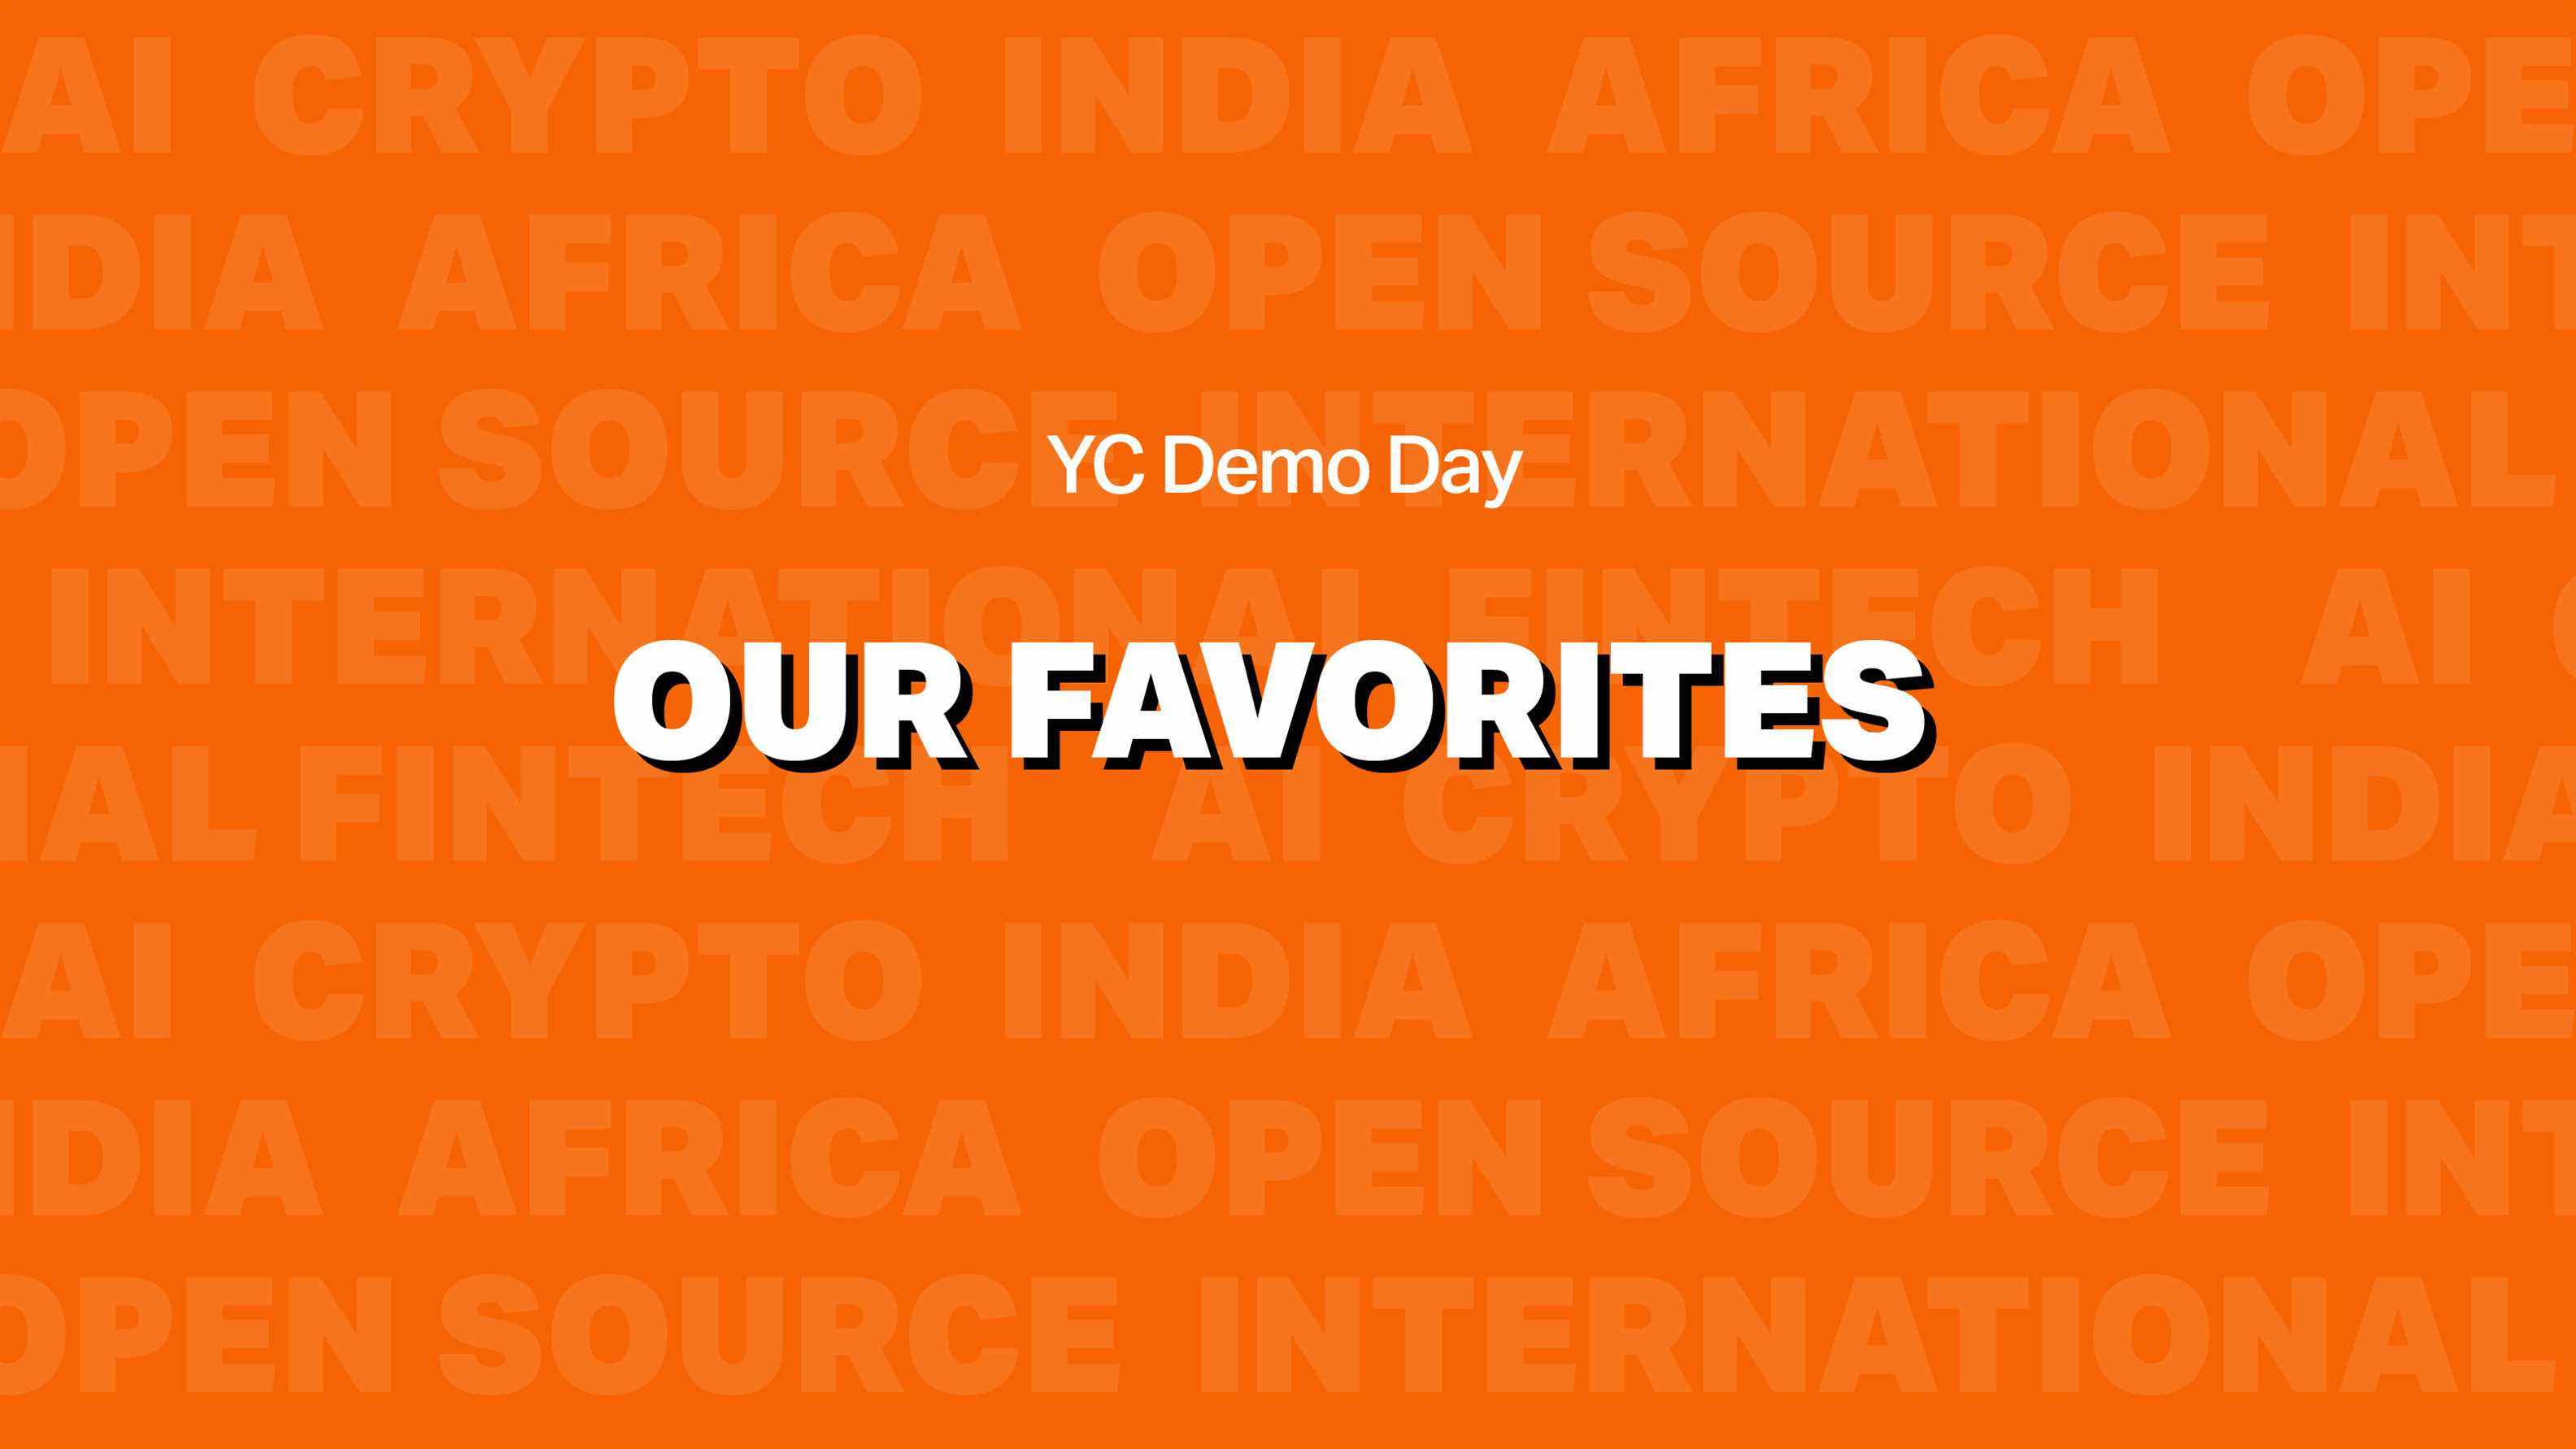 Les favoris du YC Demo Day